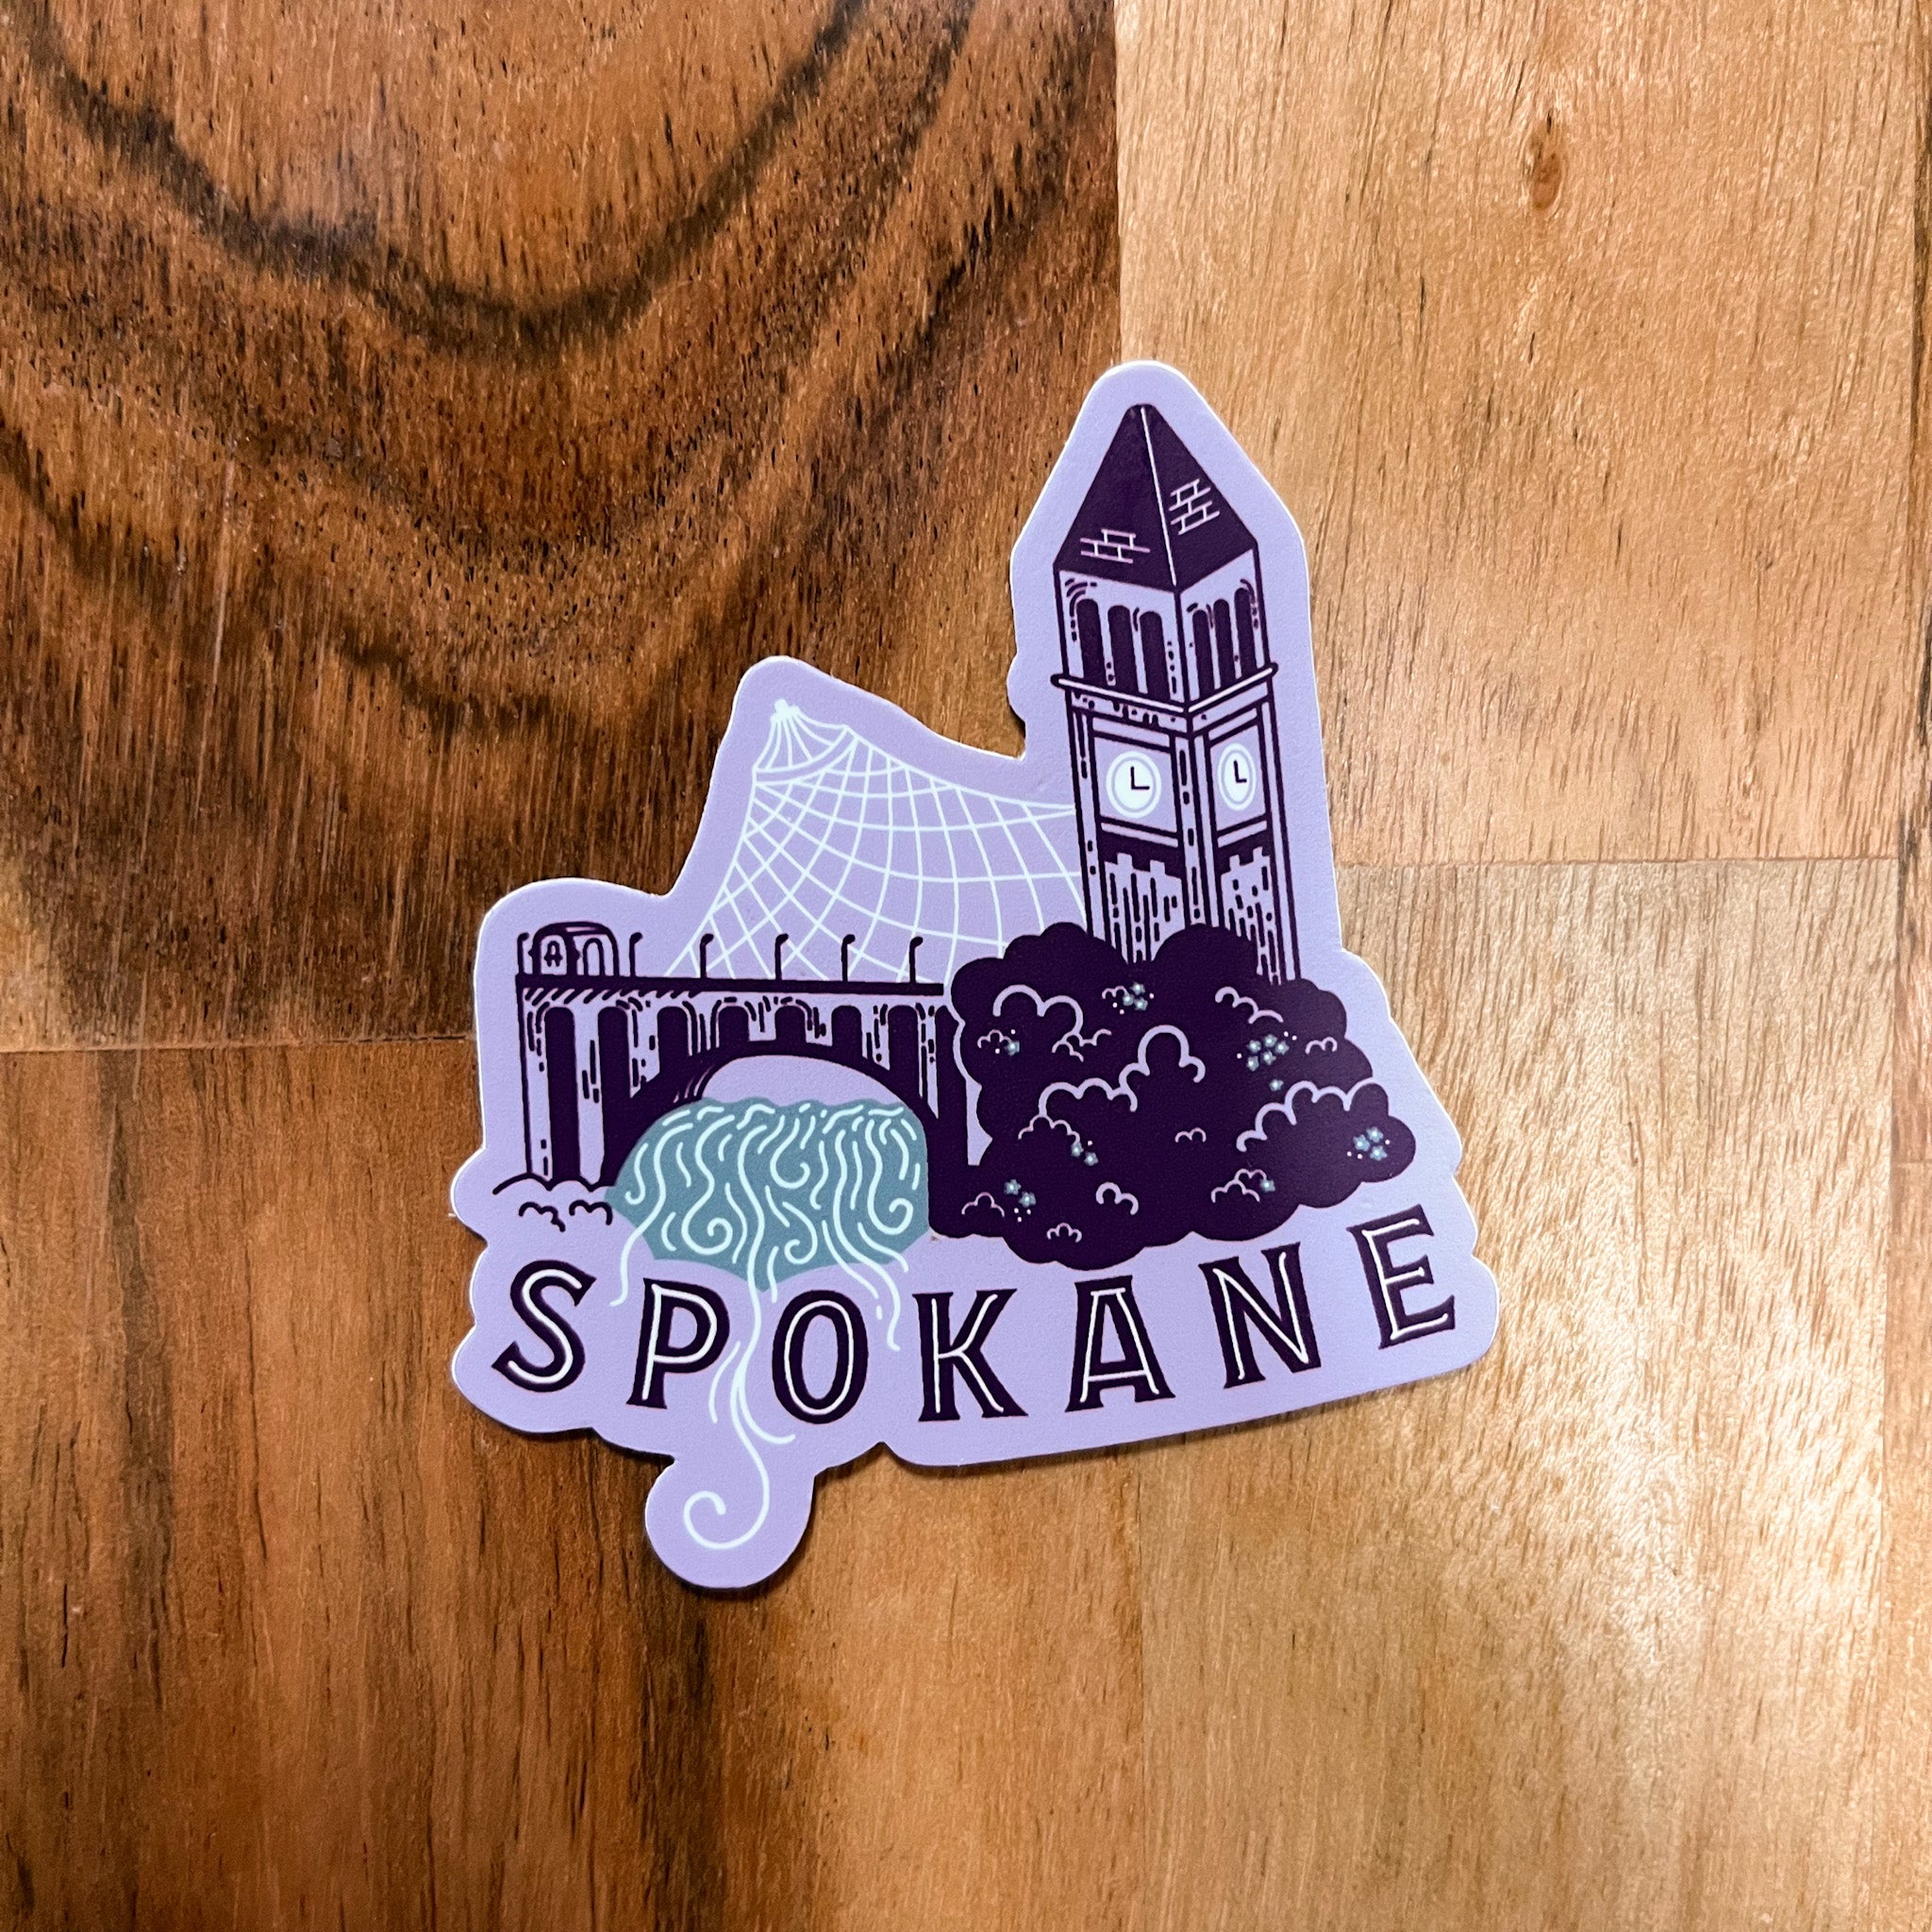 Riverfront Spokane - Lilac Sticker